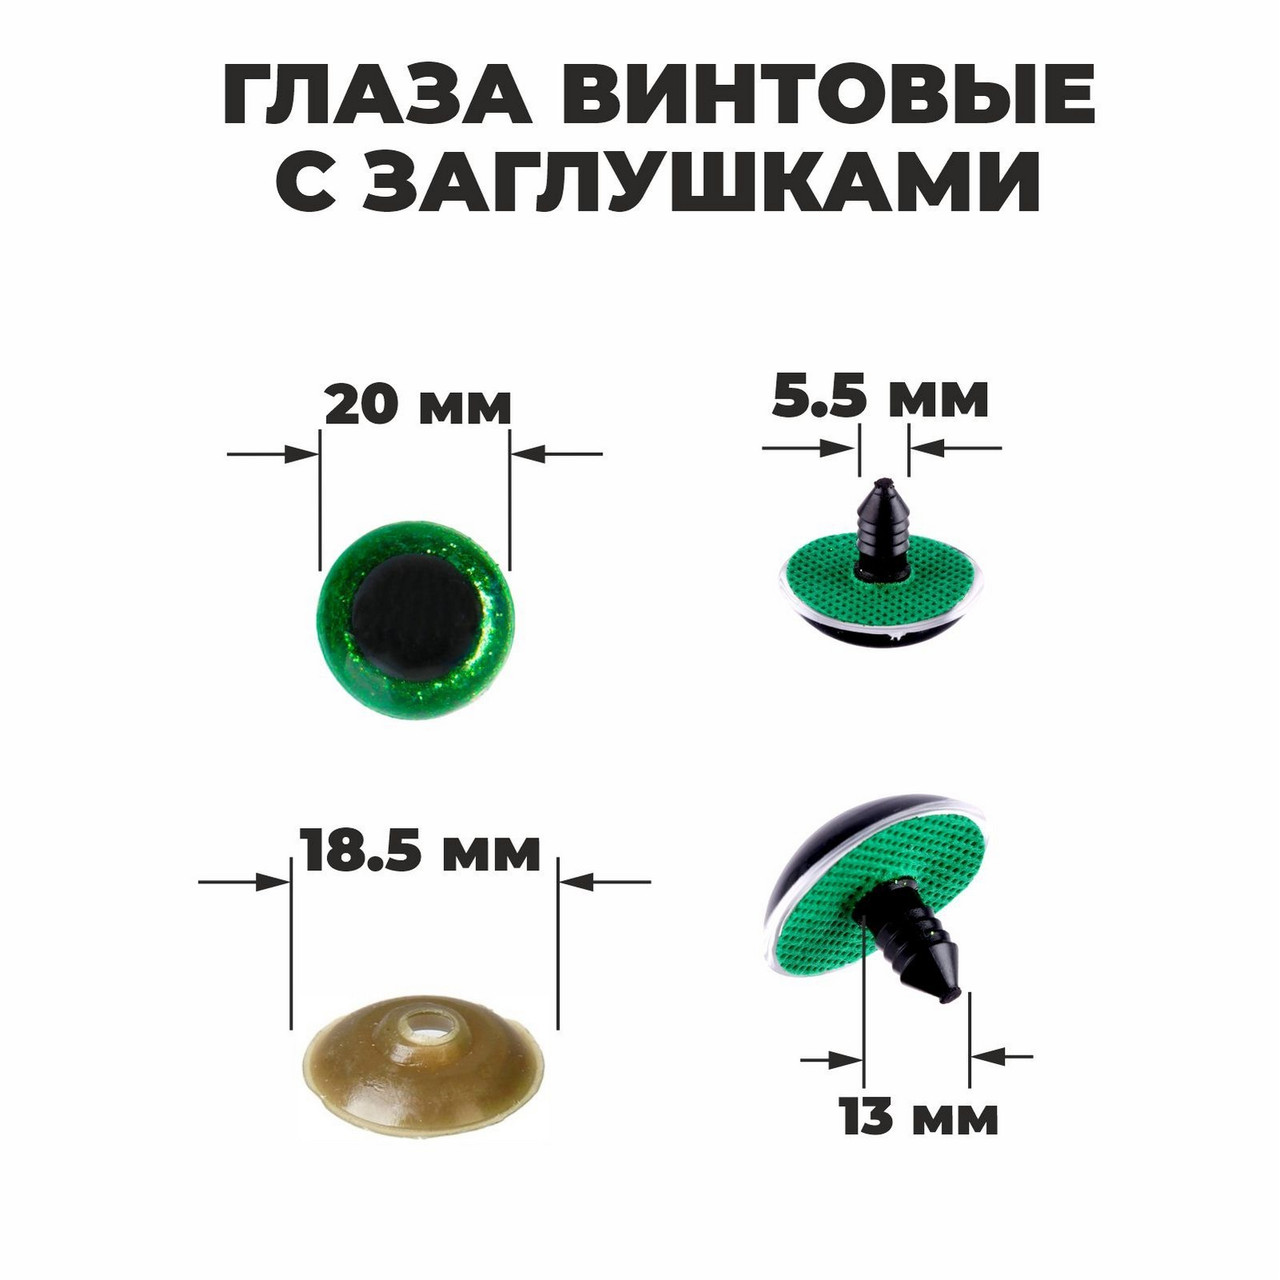 Глаза для игрушек блестящие 20 мм: зеленый